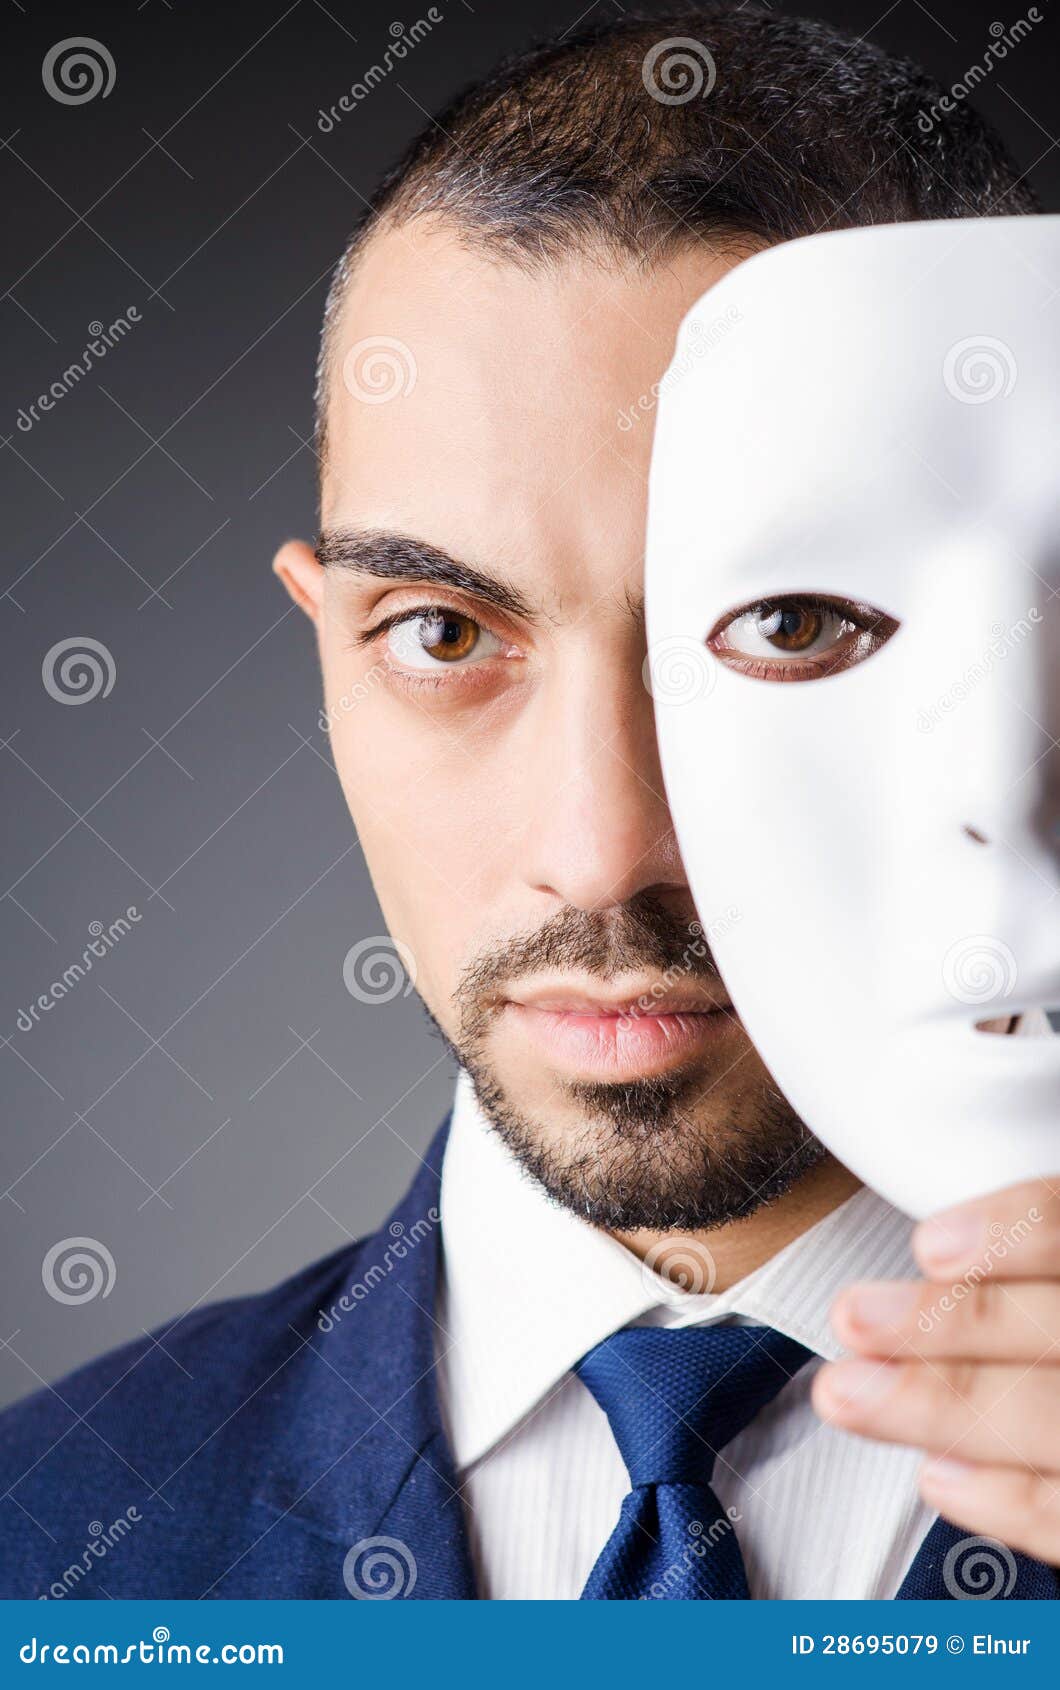 mago Mirar Situación Hombre con las máscaras imagen de archivo. Imagen de juego - 28695079